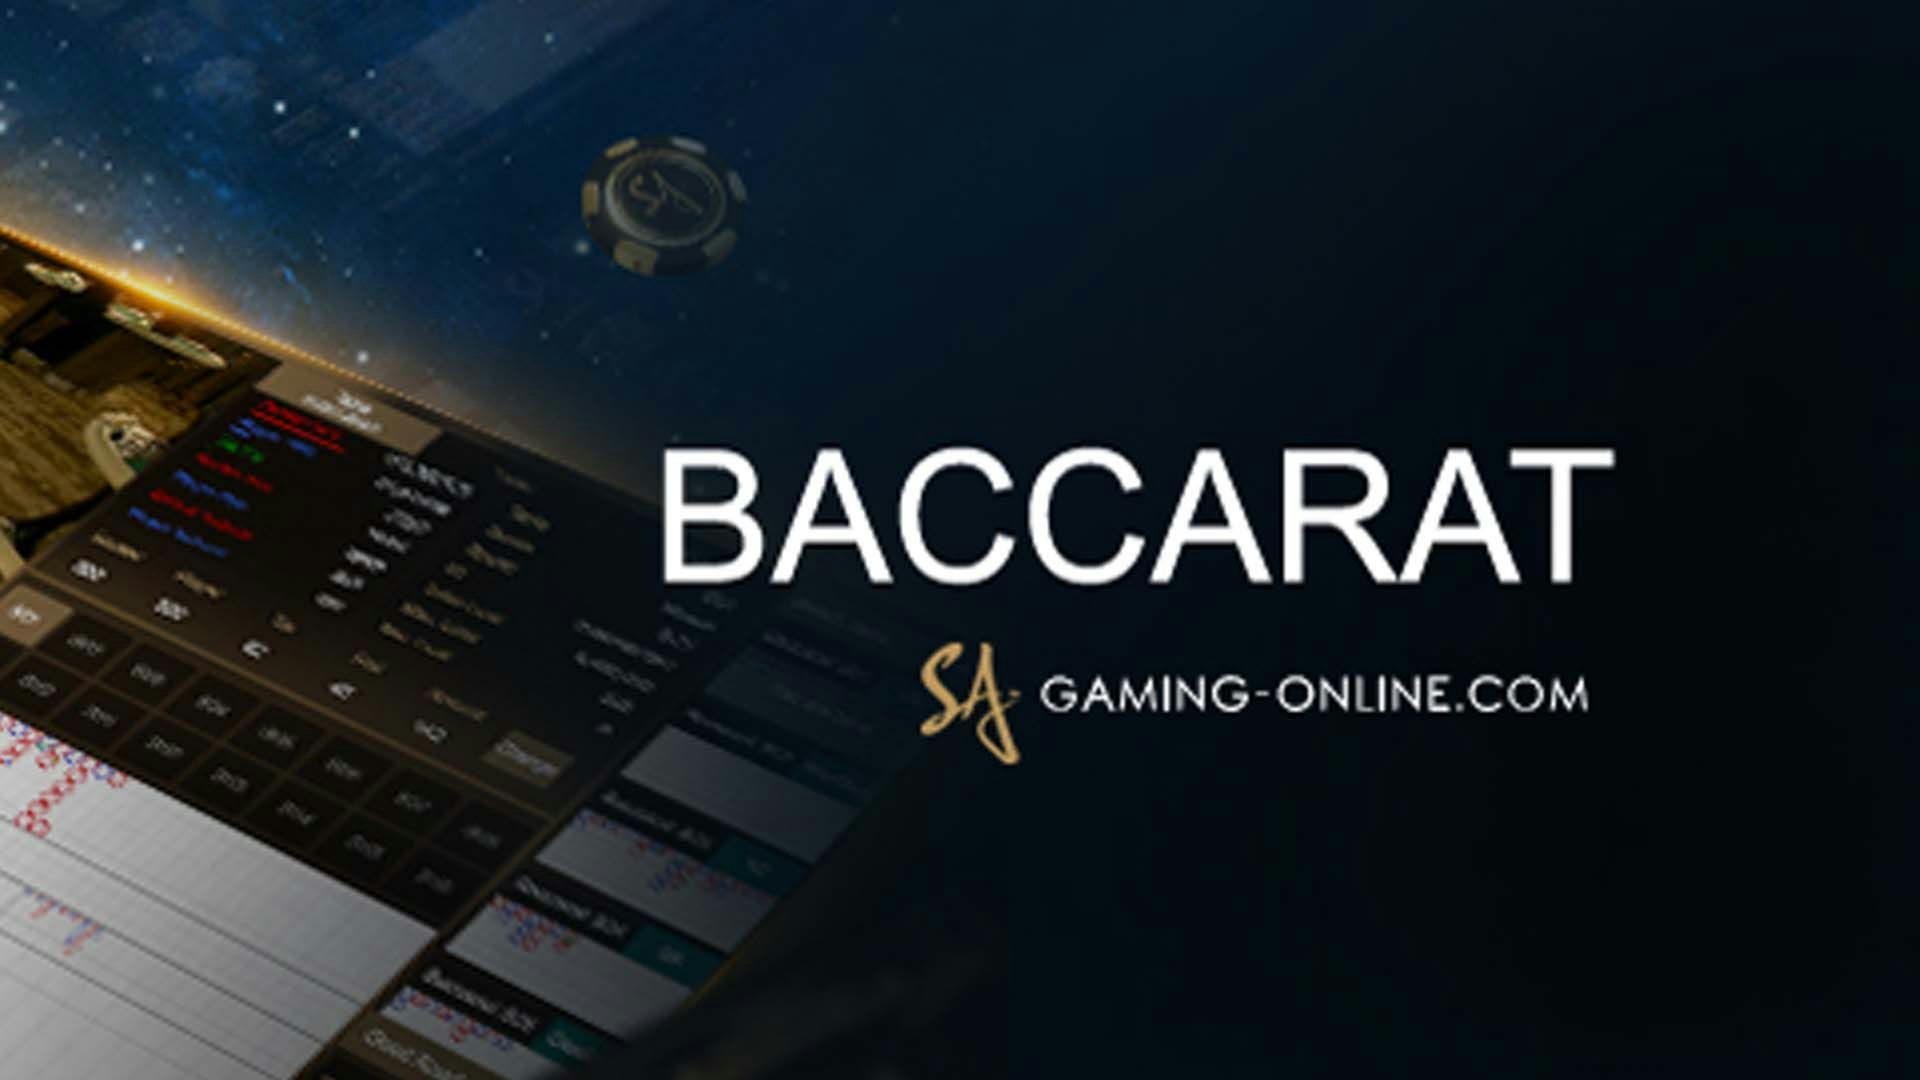 Baccarat SA Gaming Live